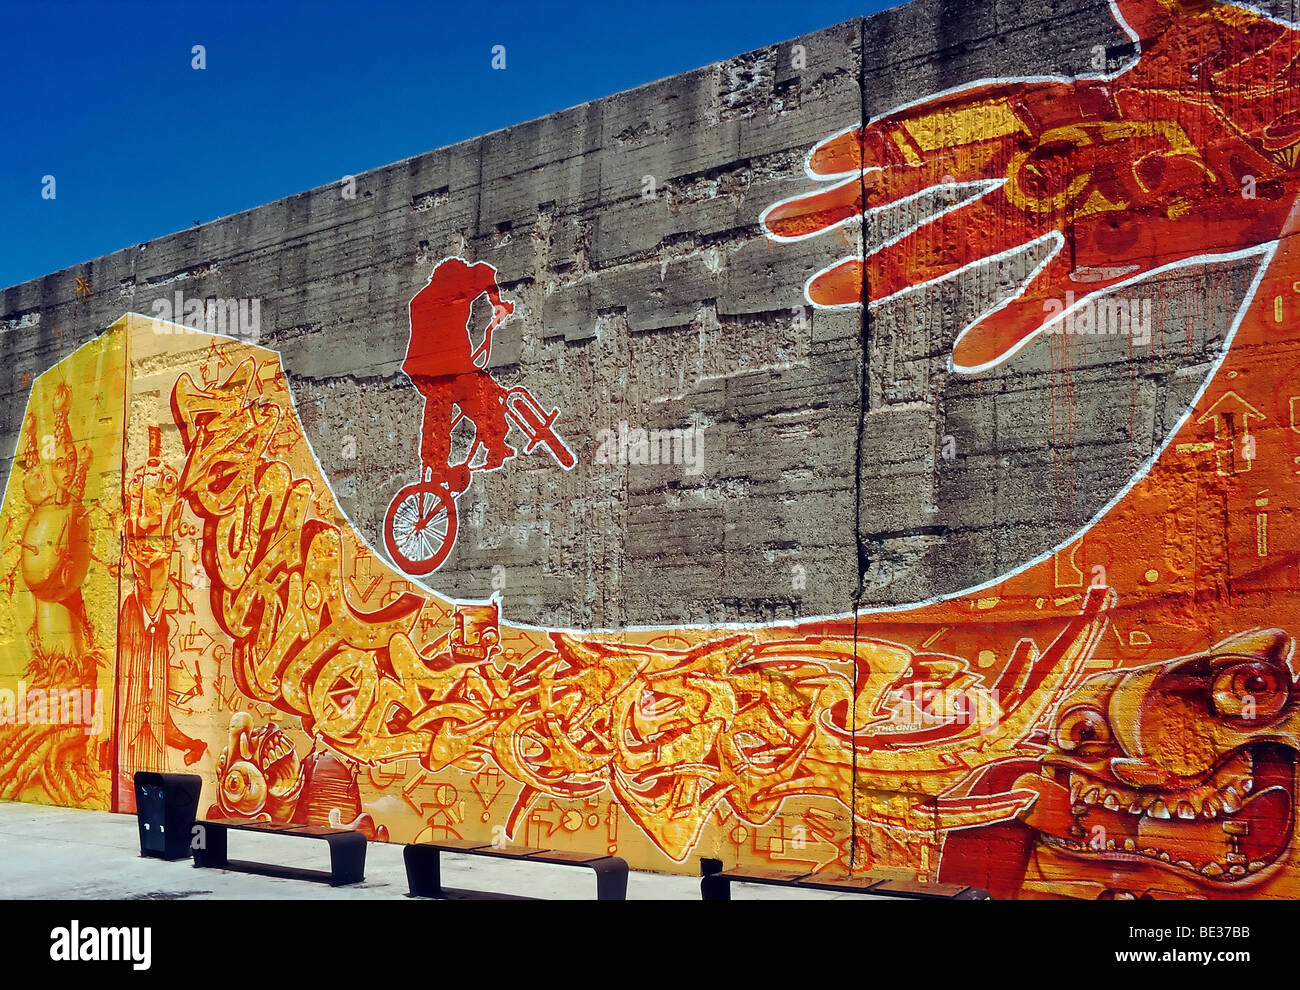 Eintritt in den Skatepark, Betonwand eines ehemaligen Stahlwerks mit großen Graffiti-Kunst, Rheinpark, neuer Stadtteil auf der R Stockfoto